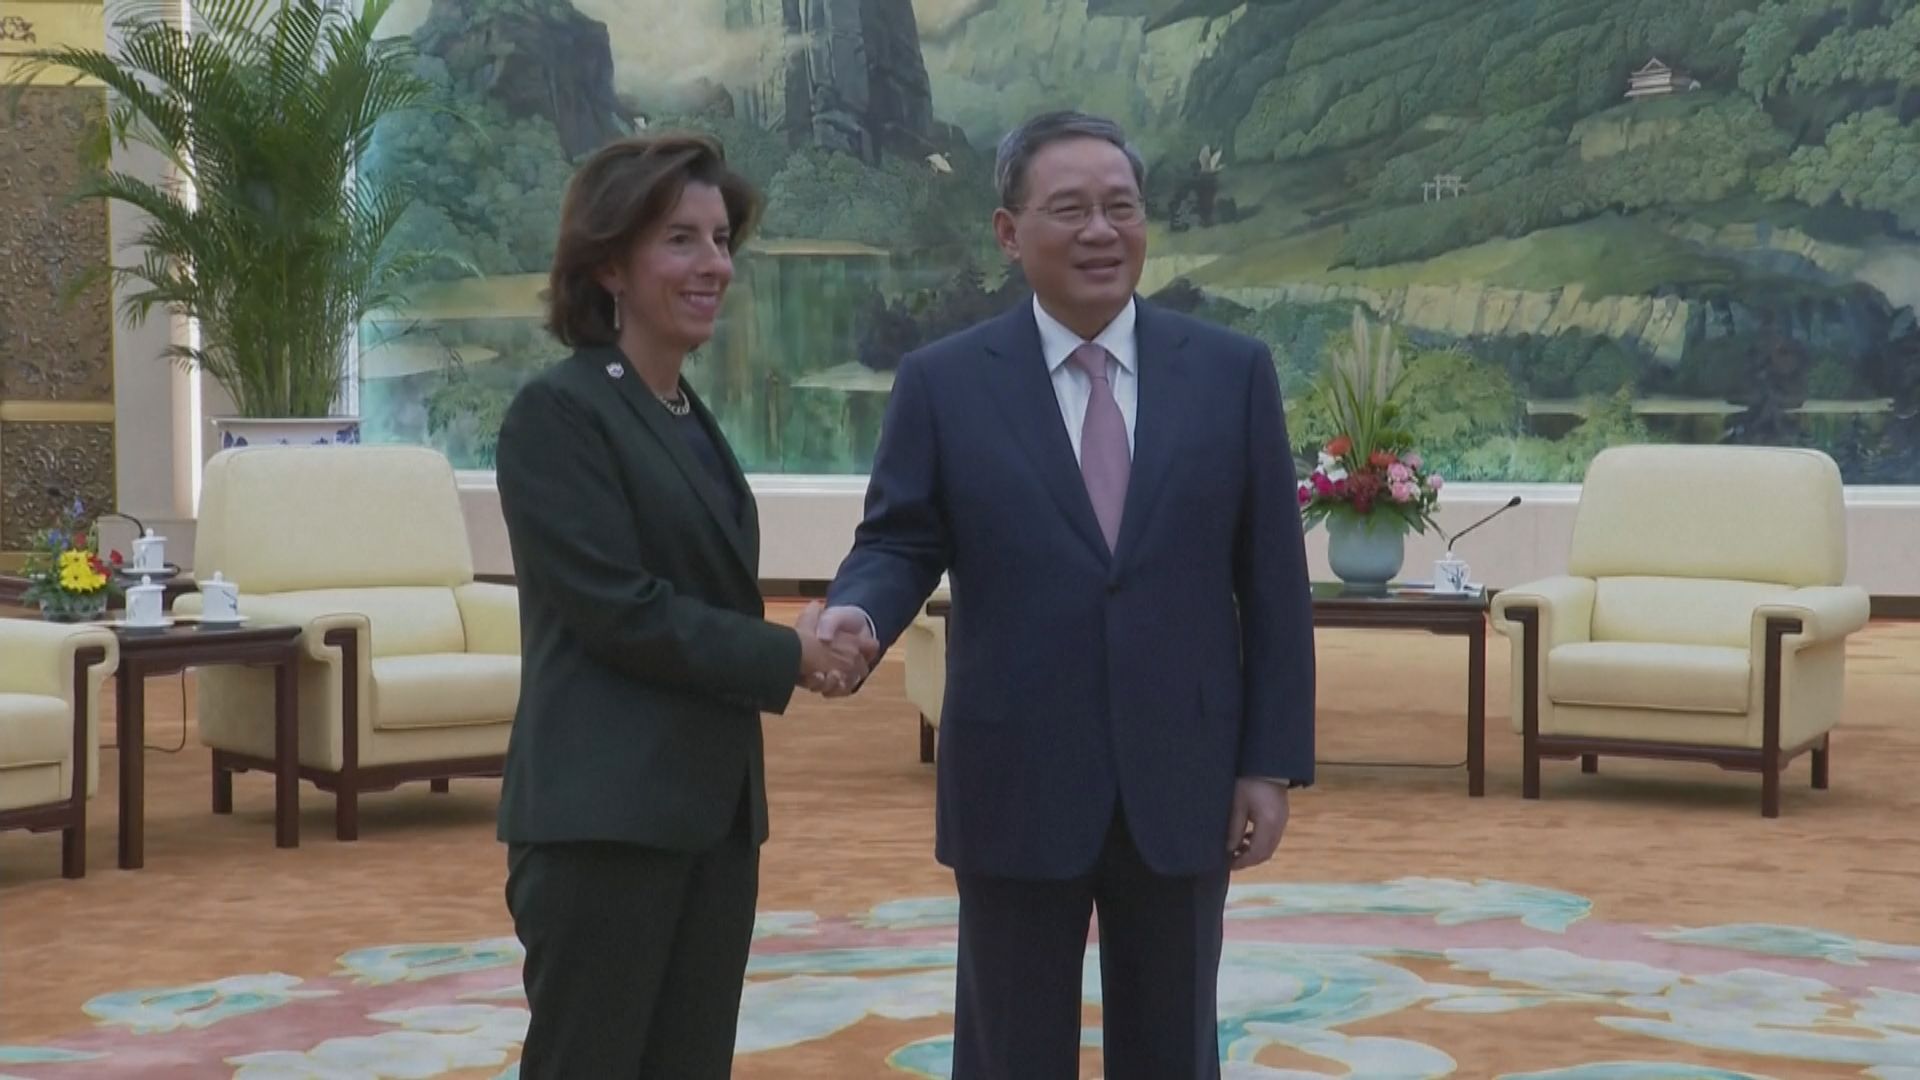 總理李強會見美國商務部長雷蒙多 促發展好兩國經貿關係